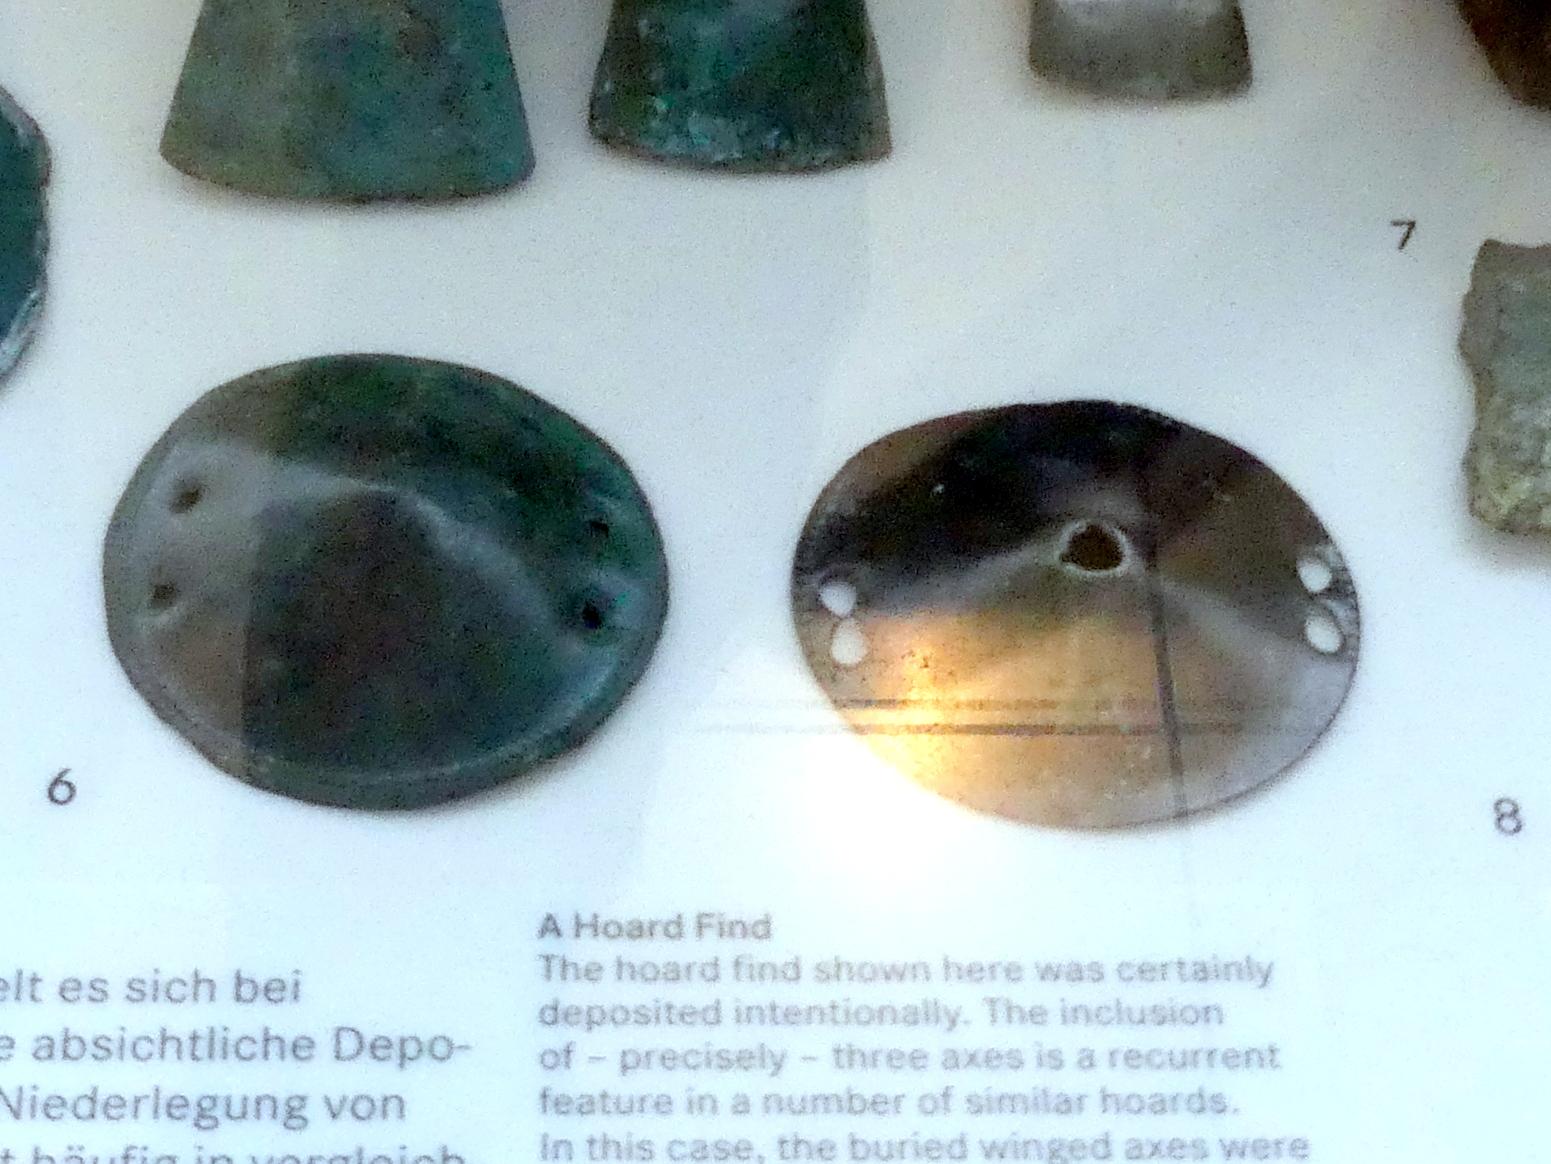 Zierscheiben, Urnenfelderzeit, 1400 - 700 v. Chr., 1300 - 1200 v. Chr.